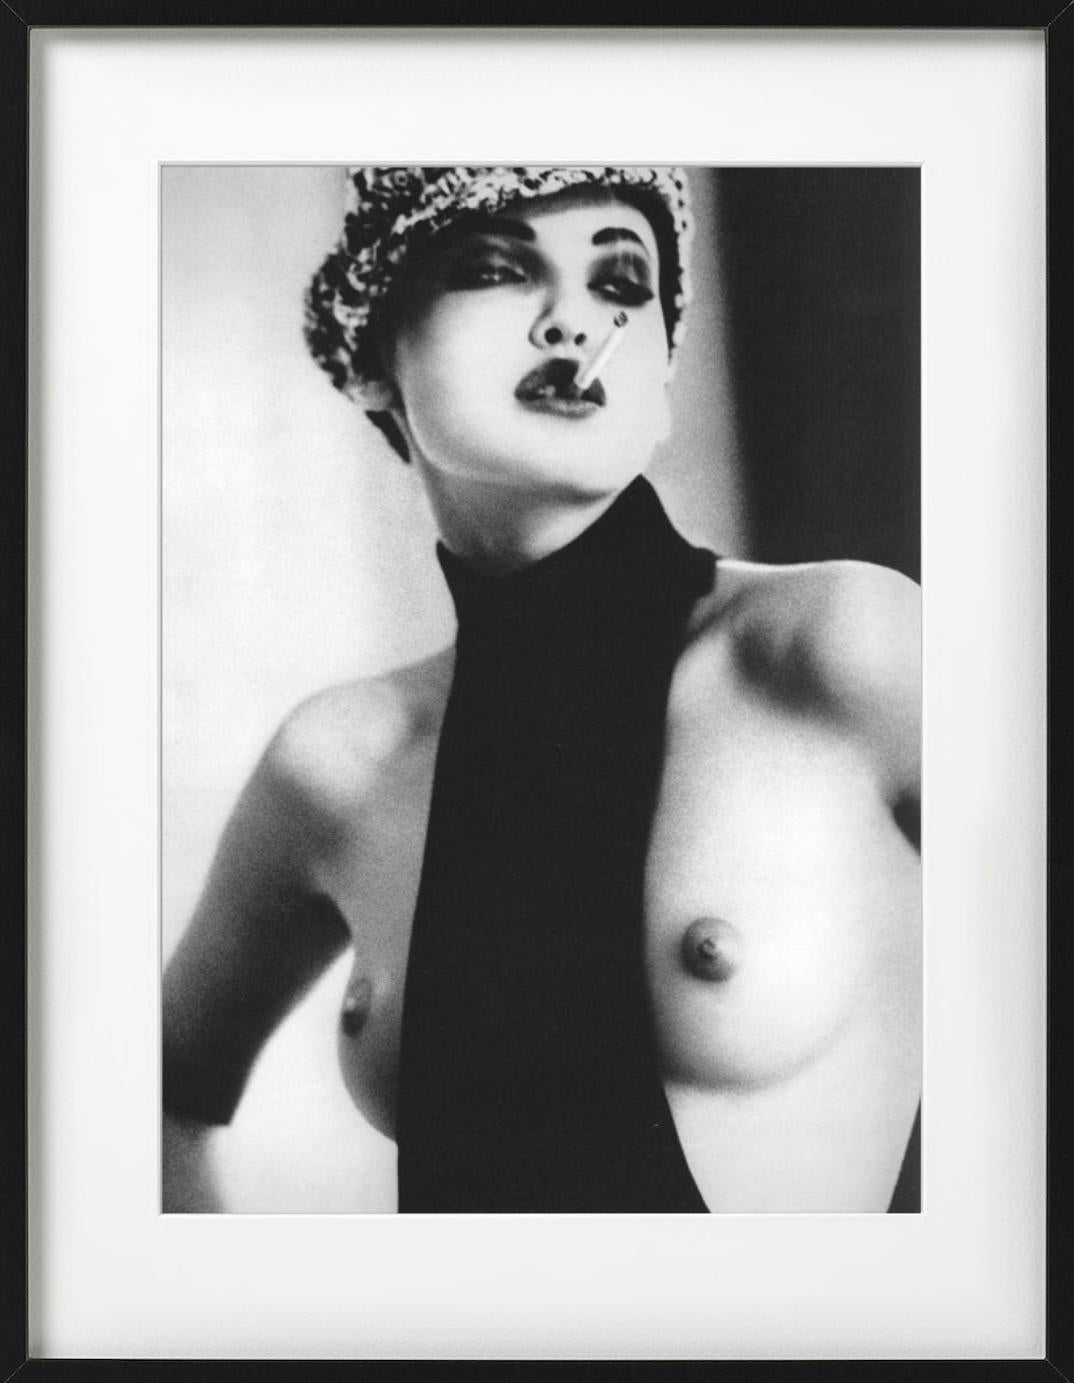 Nadja Auermann, Smoke - nude portrait with cigarette, fine art photography - Photograph by Ellen von Unwerth